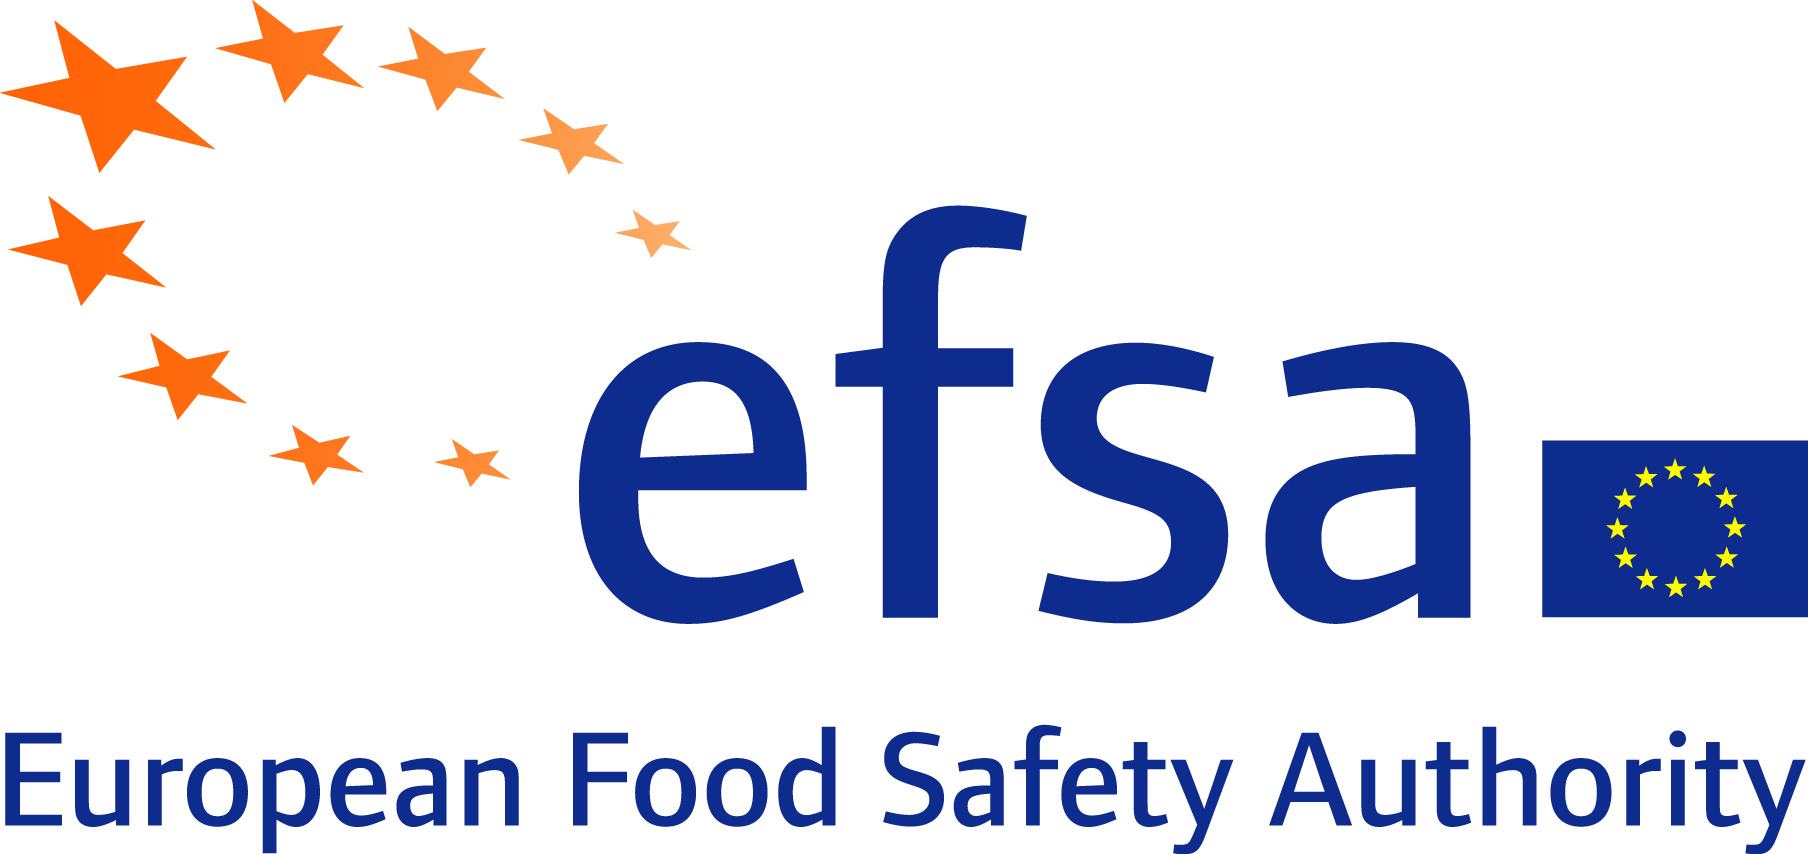 La Commissione UE cerca candidati per l'Autorità Europea per la Sicurezza Alimentare